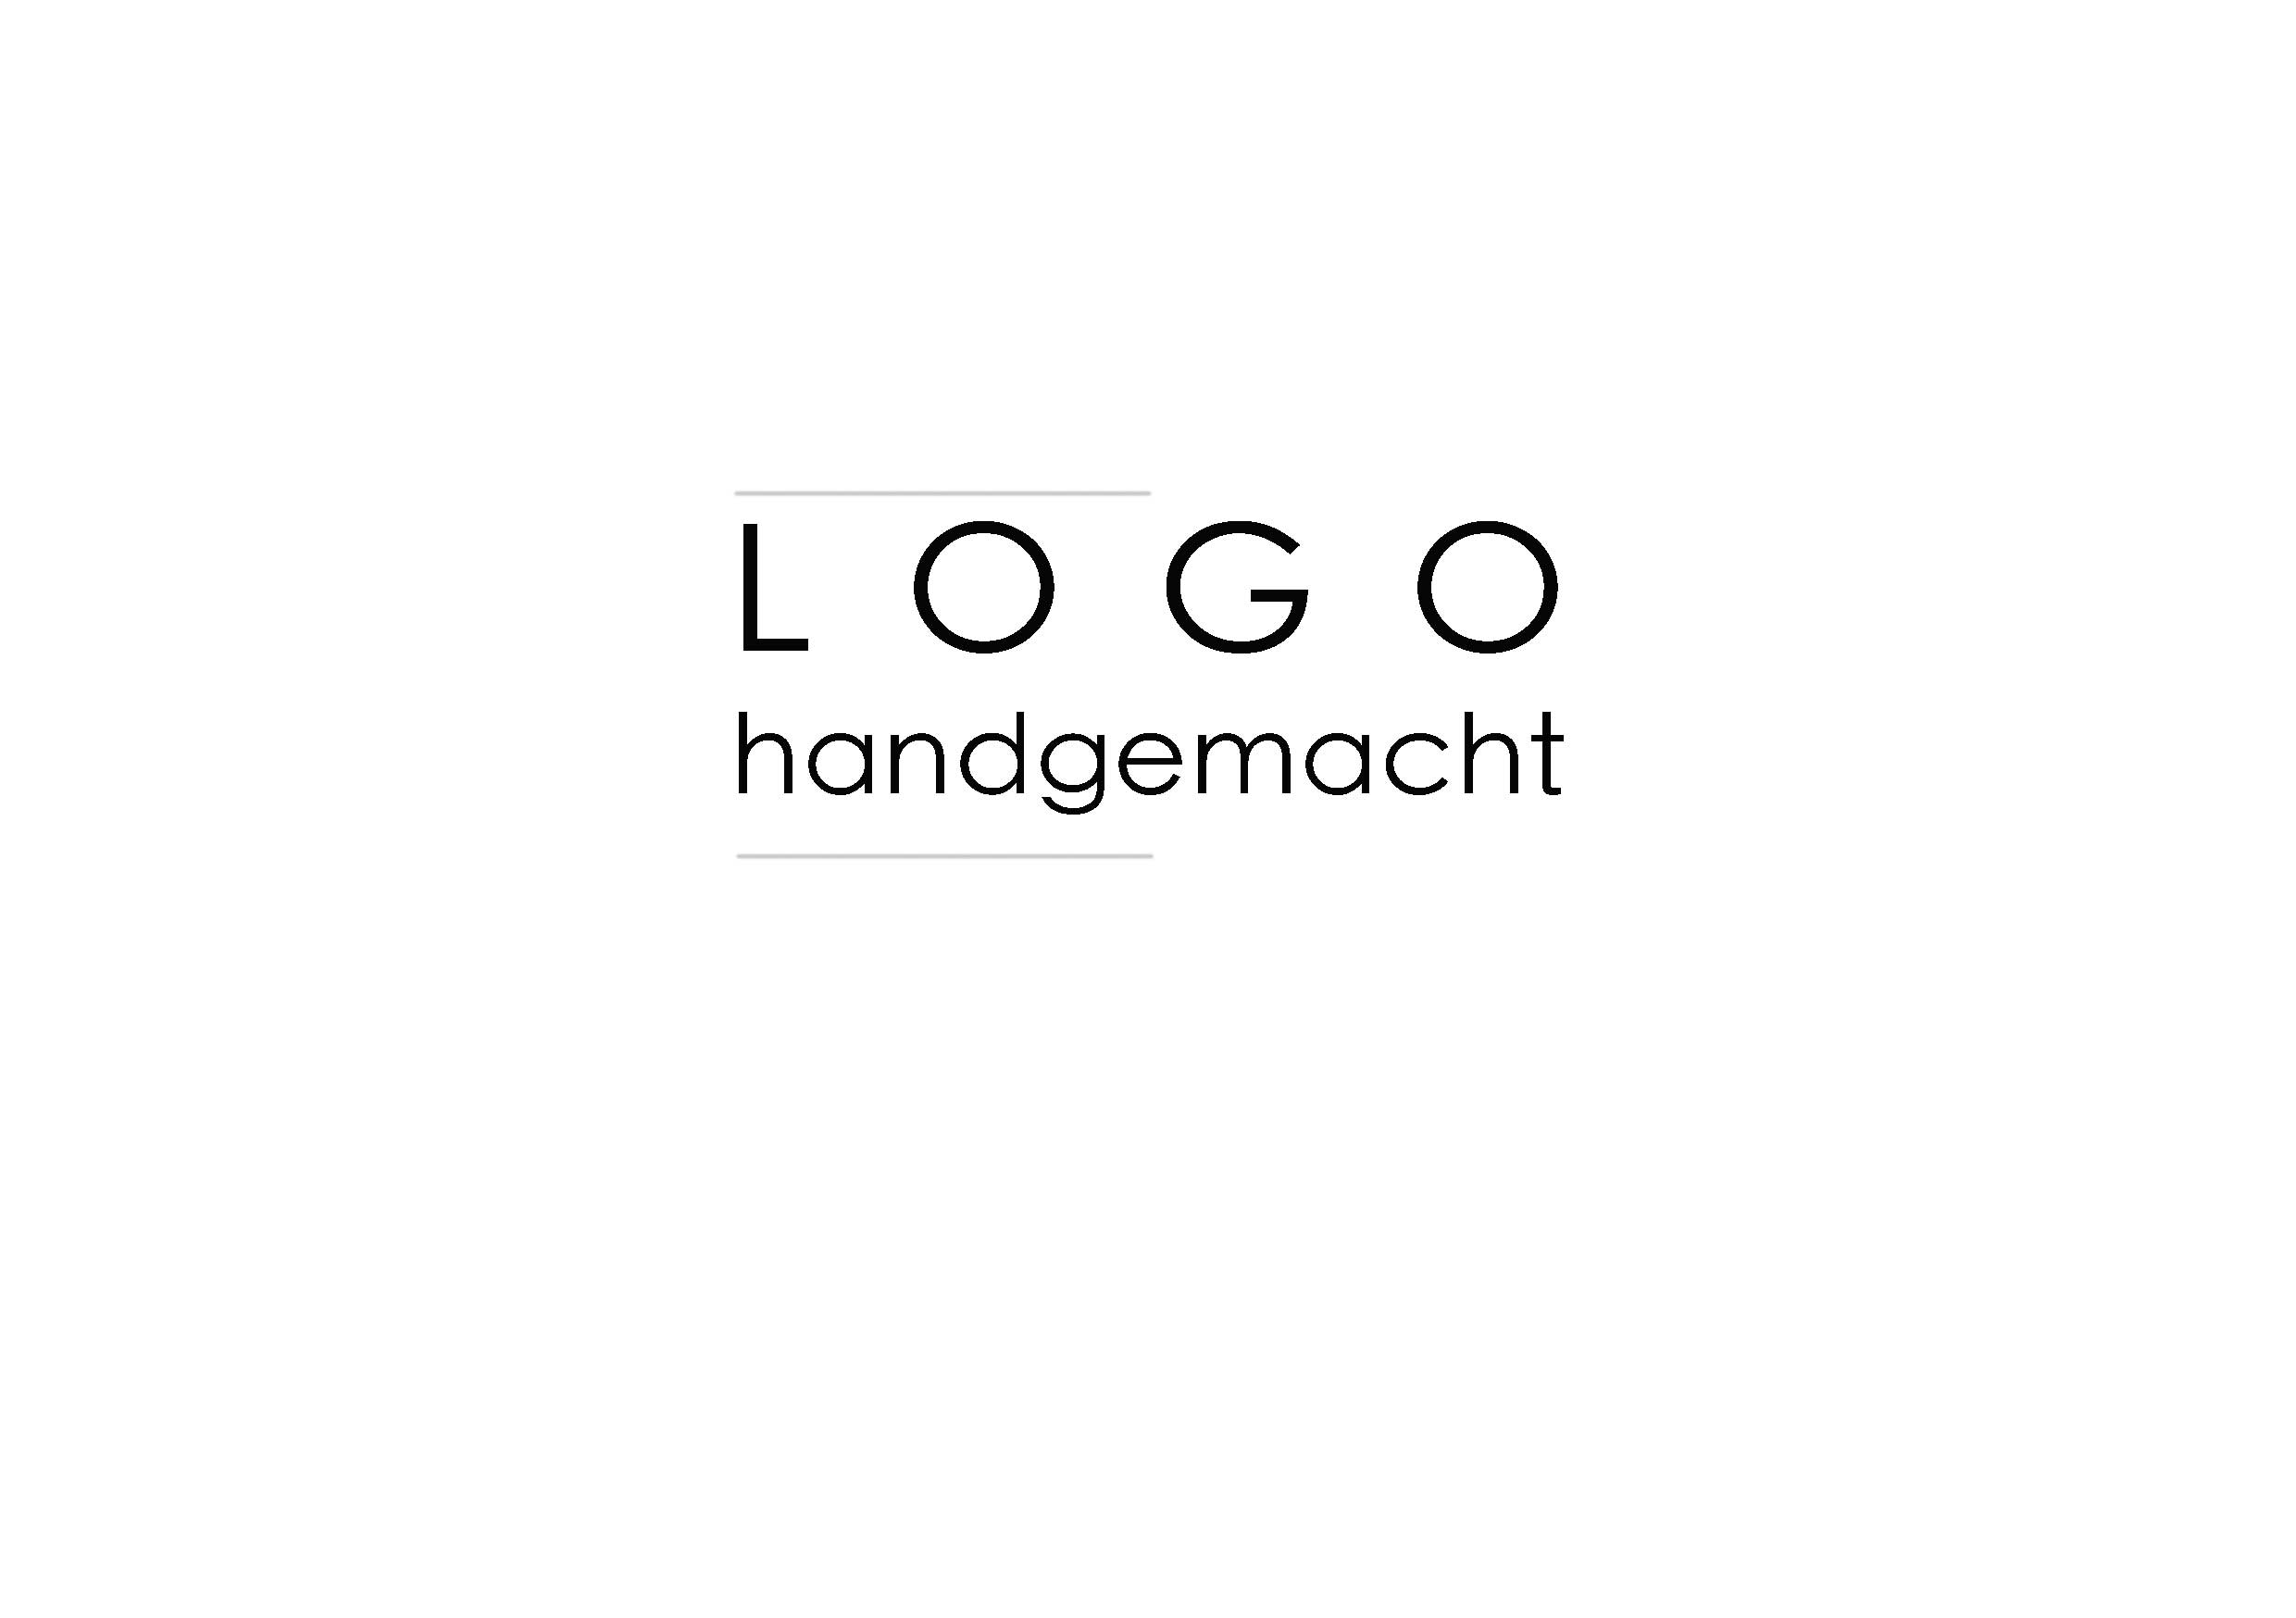 logo design - HANDGEMACHT